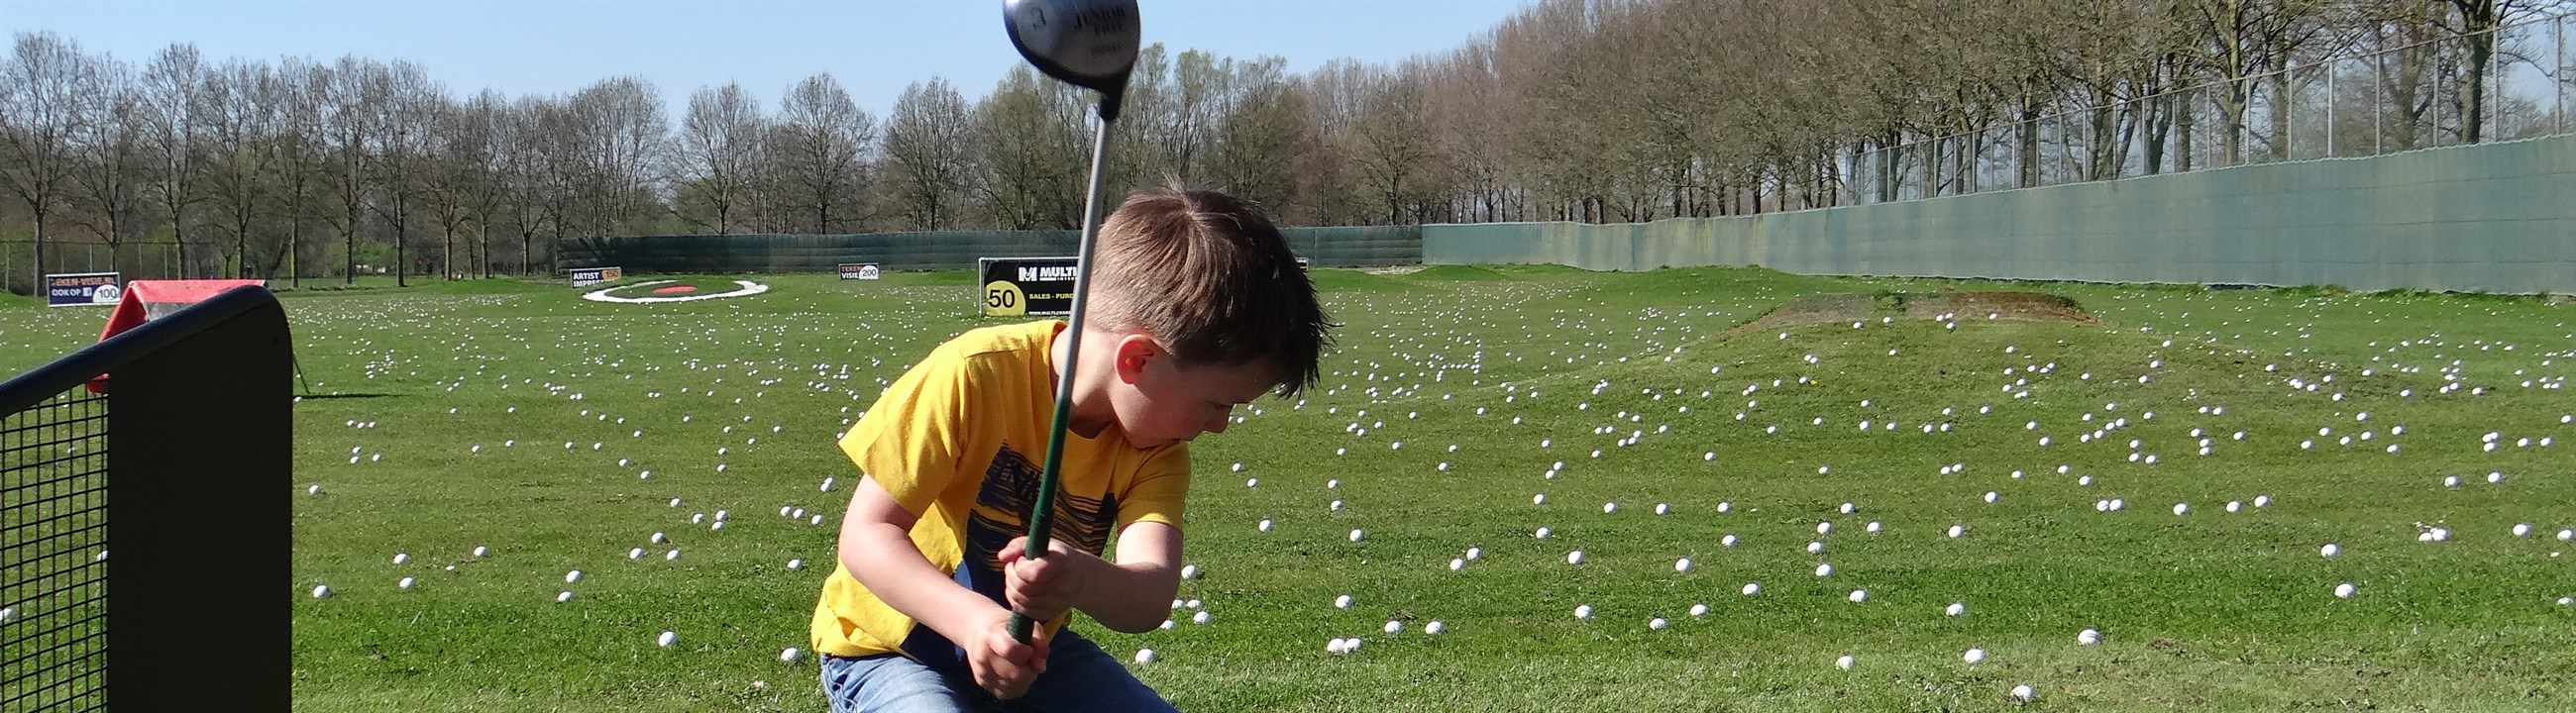 Welke golfspullen mijn kind nodig? • Golf.nl